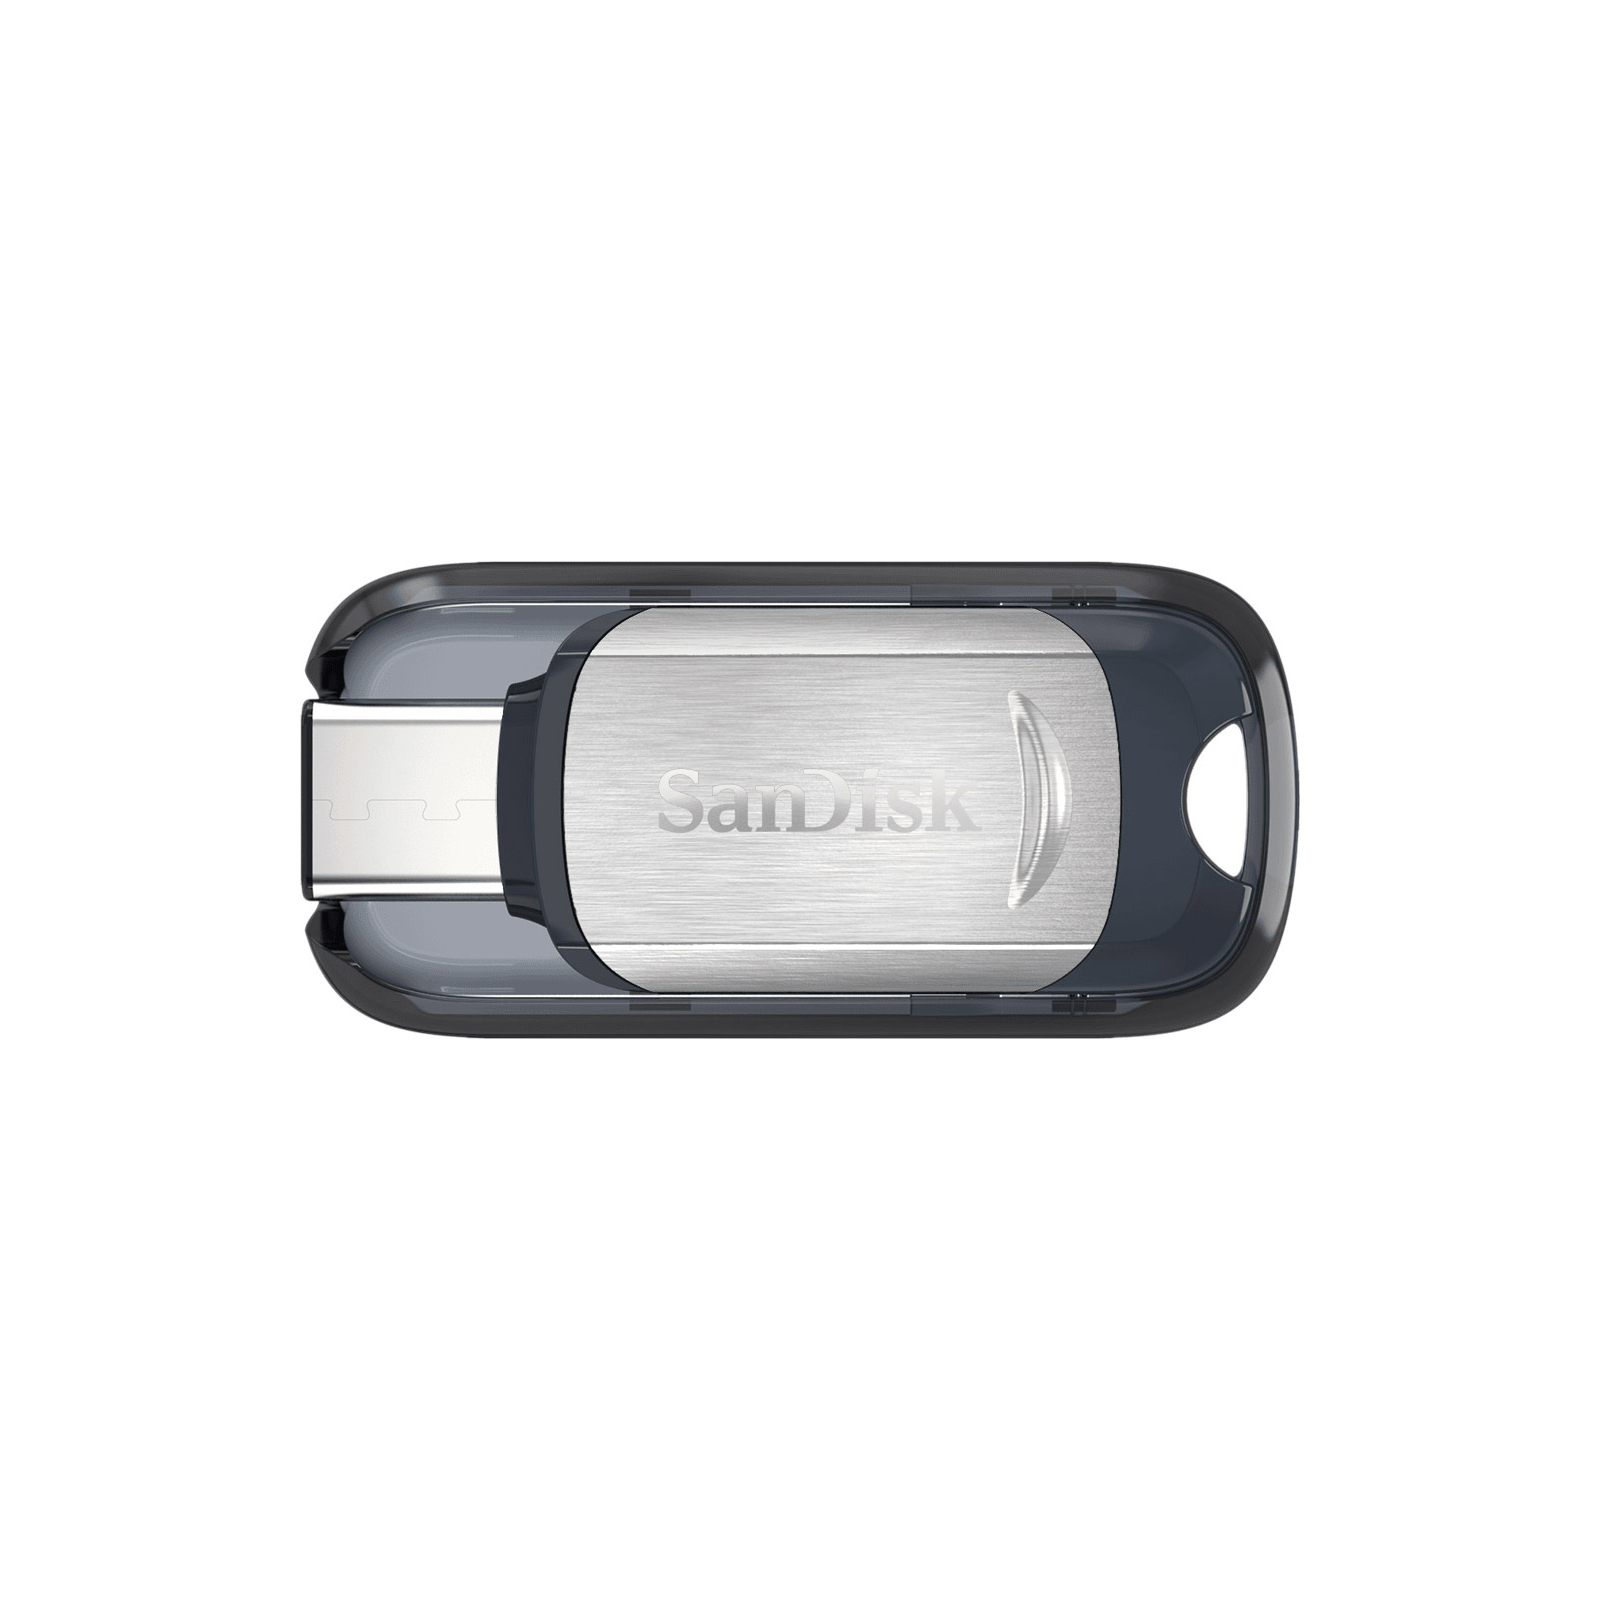 USB флеш накопитель SanDisk 32GB Ultra Type C USB 3.1 (SDCZ450-032G-G46)